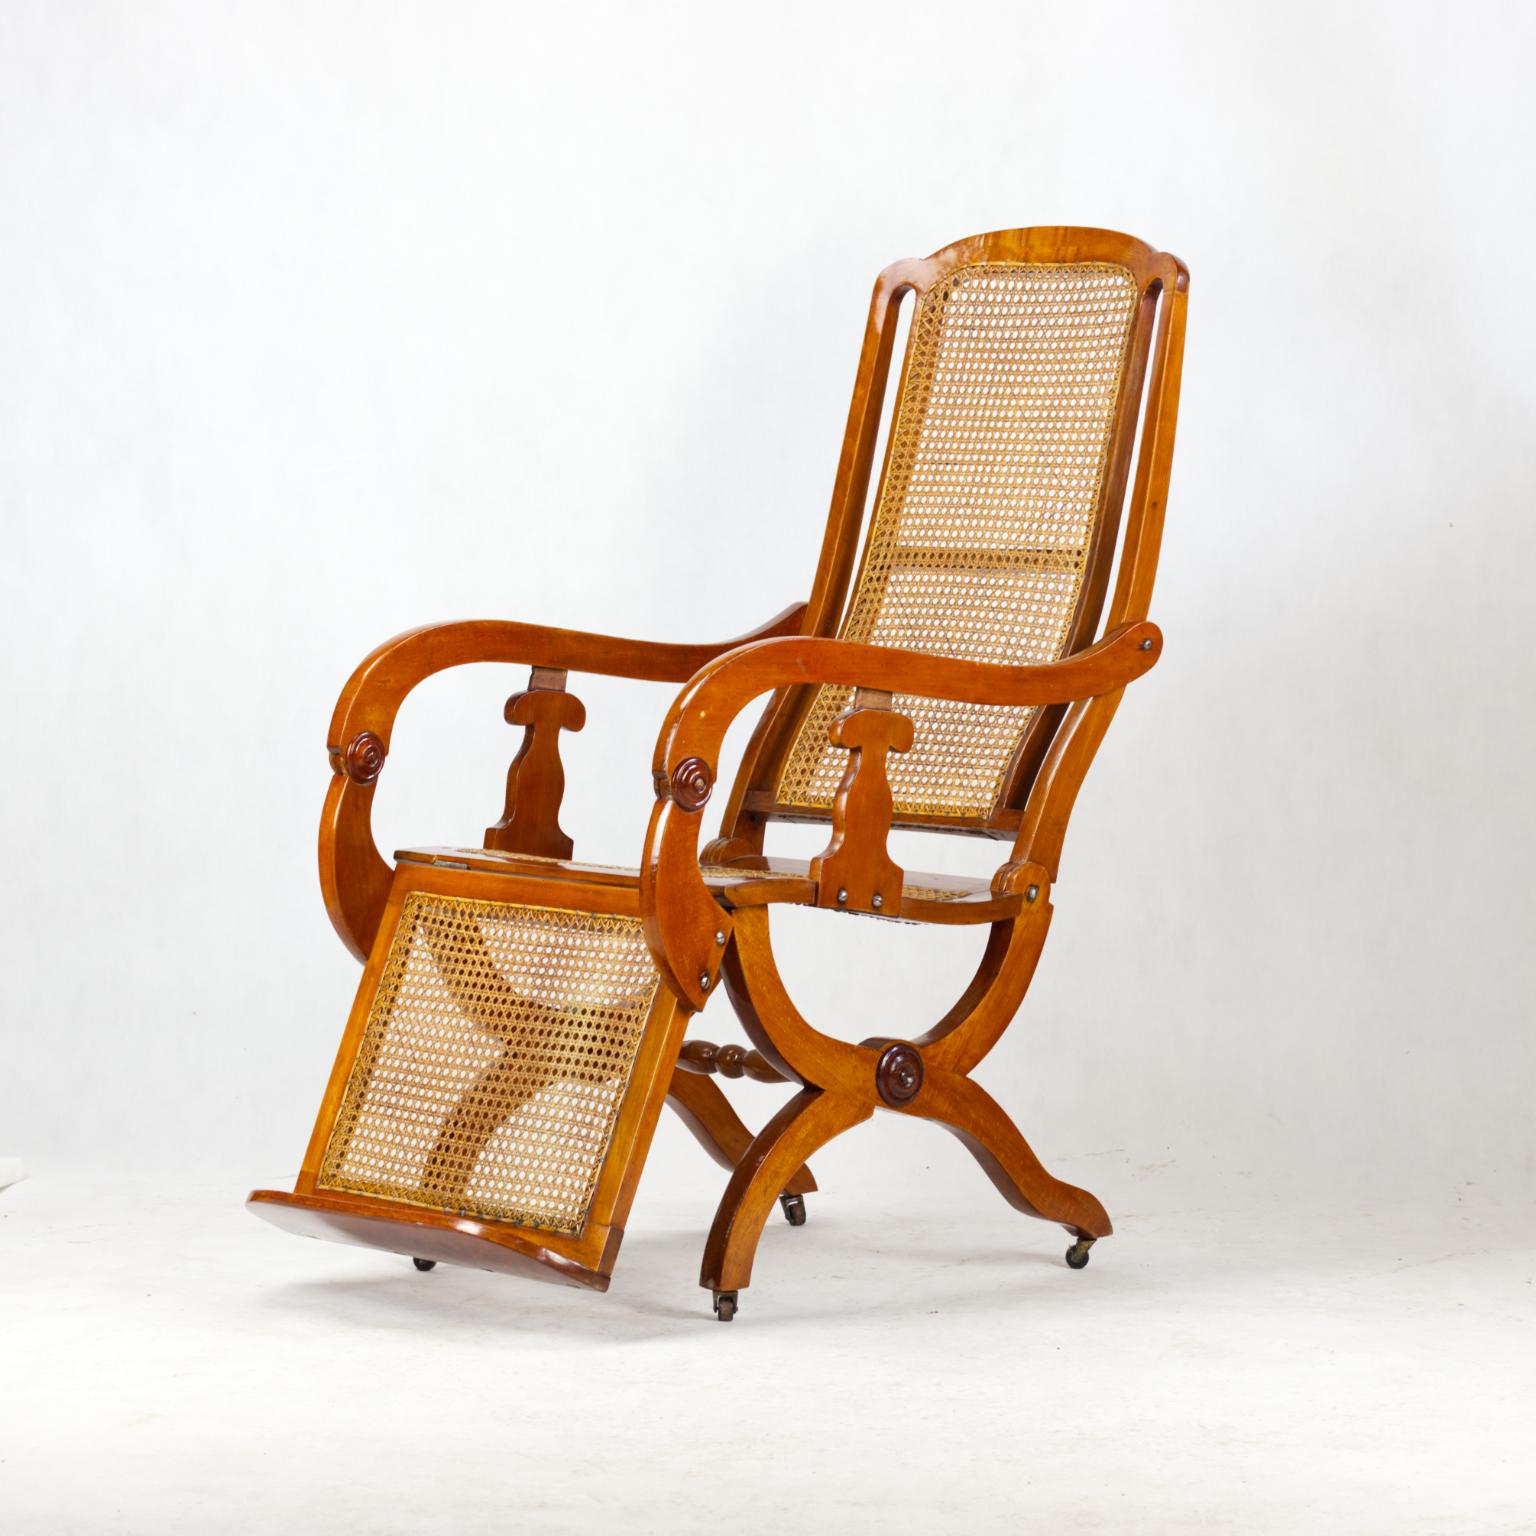 1857 bc chair